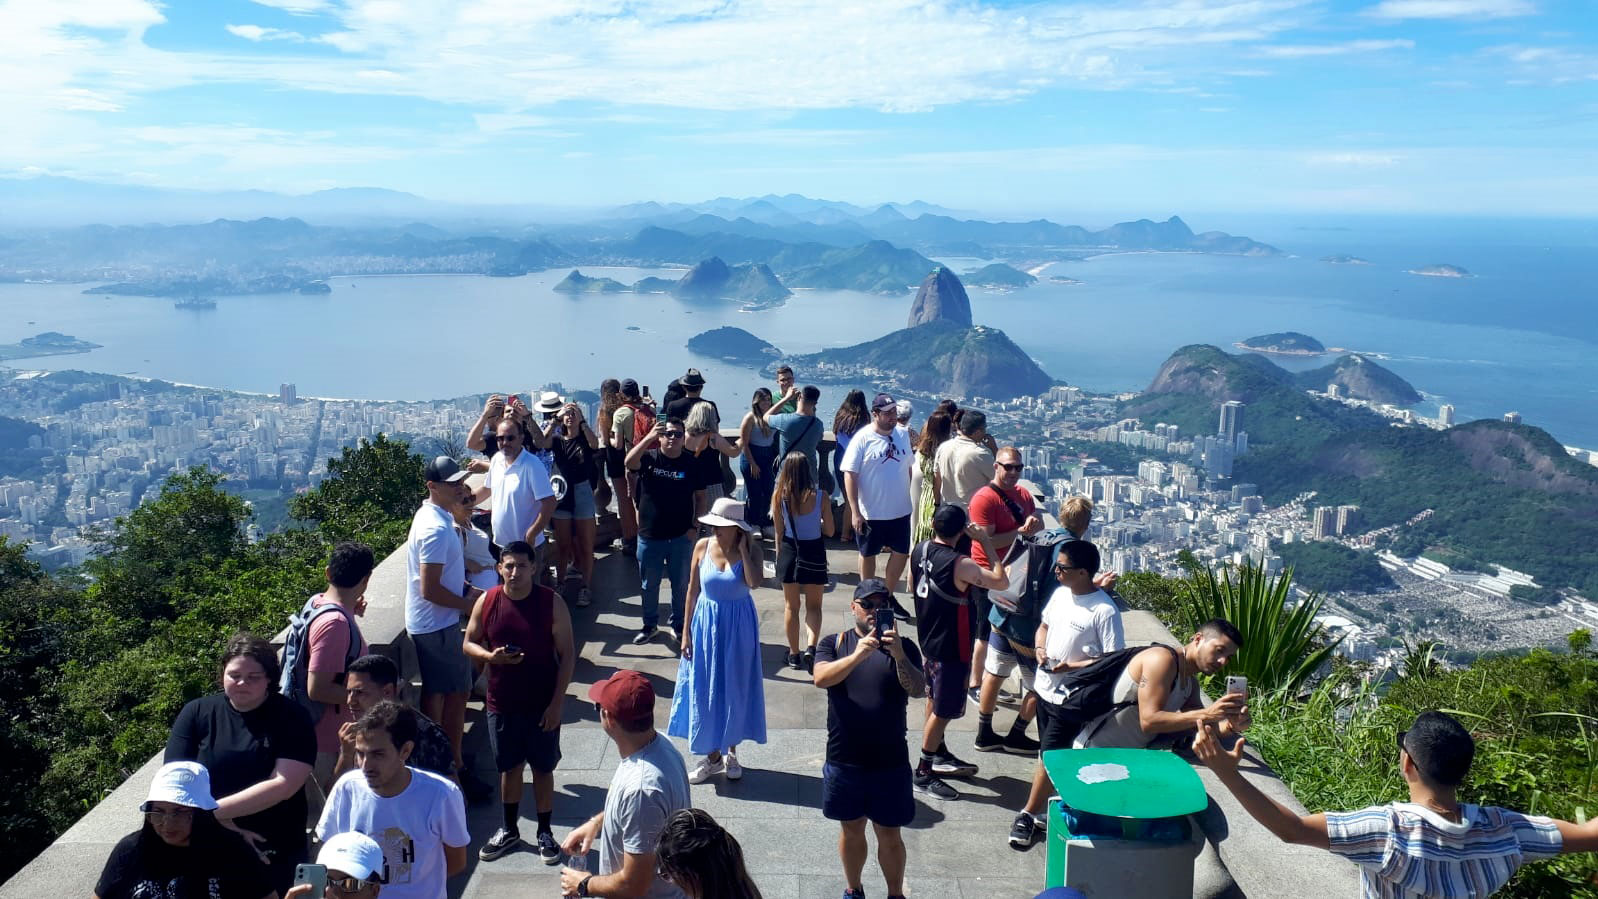 Turismo: 5 destinos imprescindibles para descubrir Brasil